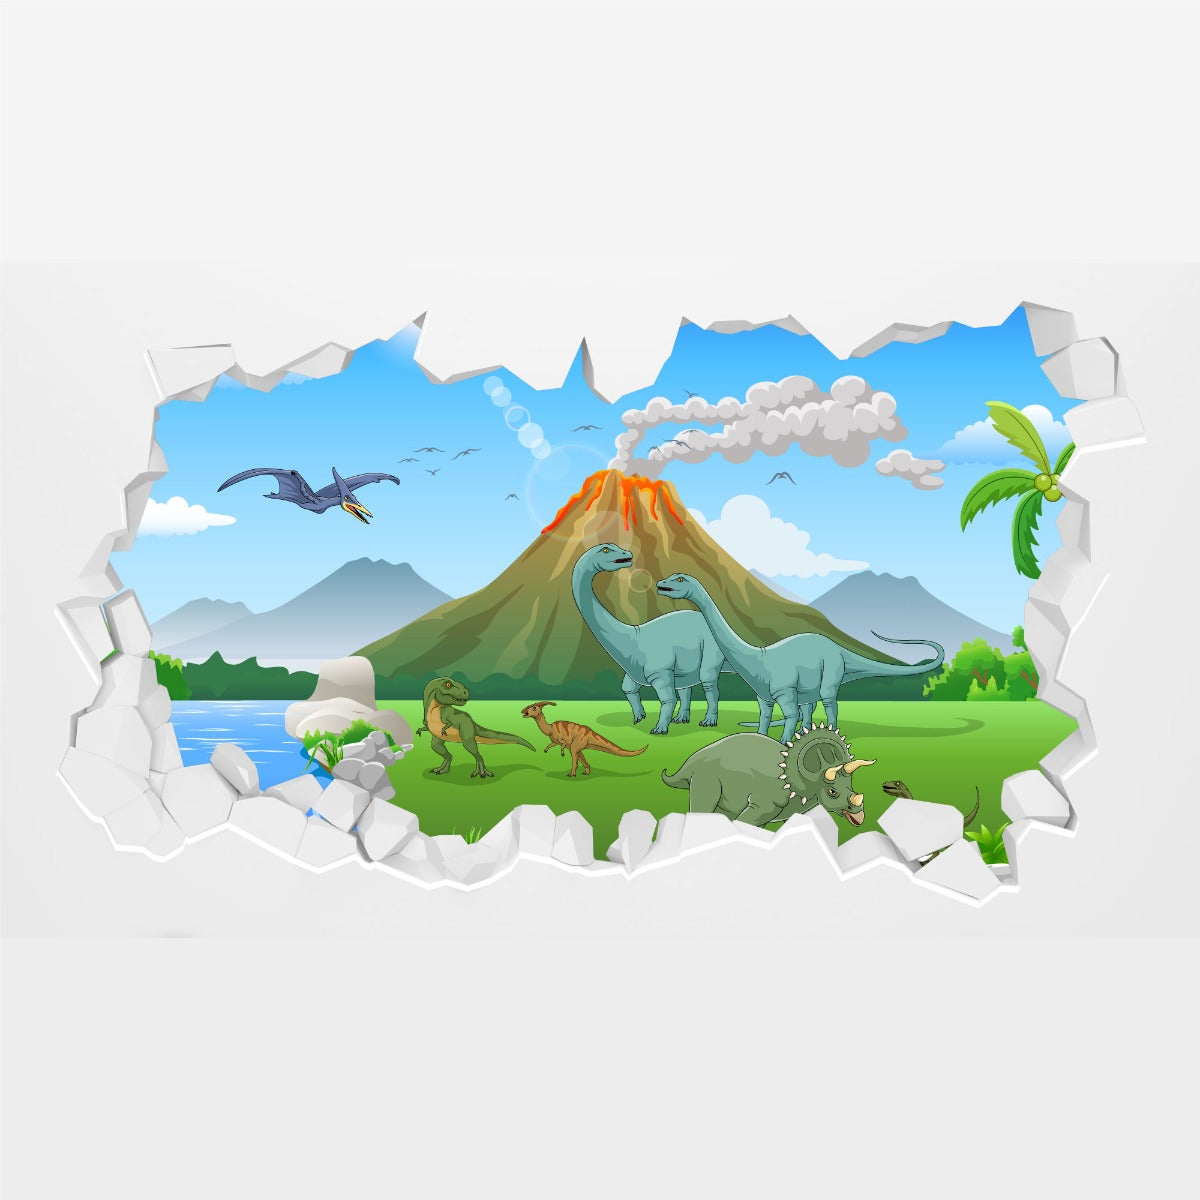 Dinosaur Wall Sticker - Cartoon Dinosaur Land with Erupting Volcano Broken Wall